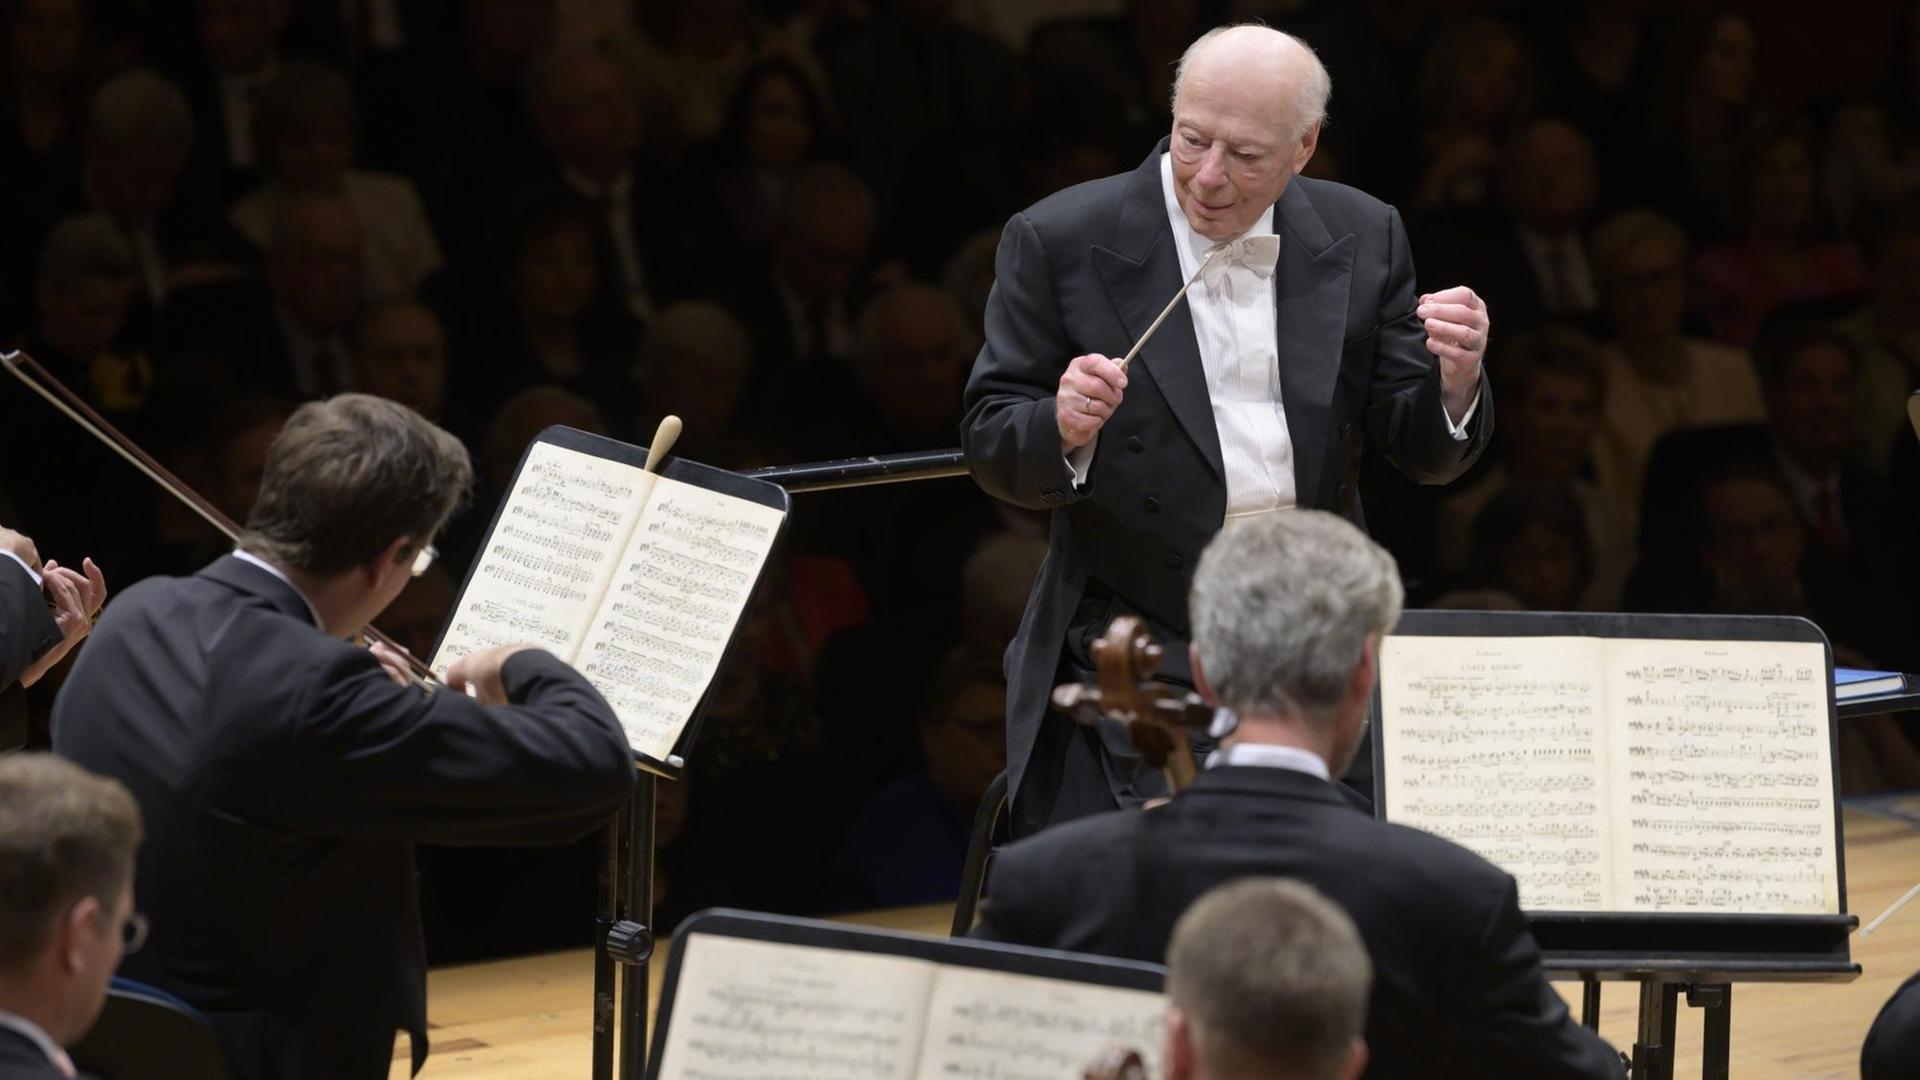 Bernard Haitink auf der Bühne vor dem Orchester. Zu sehen ist der Dirigent mit Taktstock in der Hand, er blickt nach links, vor ihm sitzen Streicher.